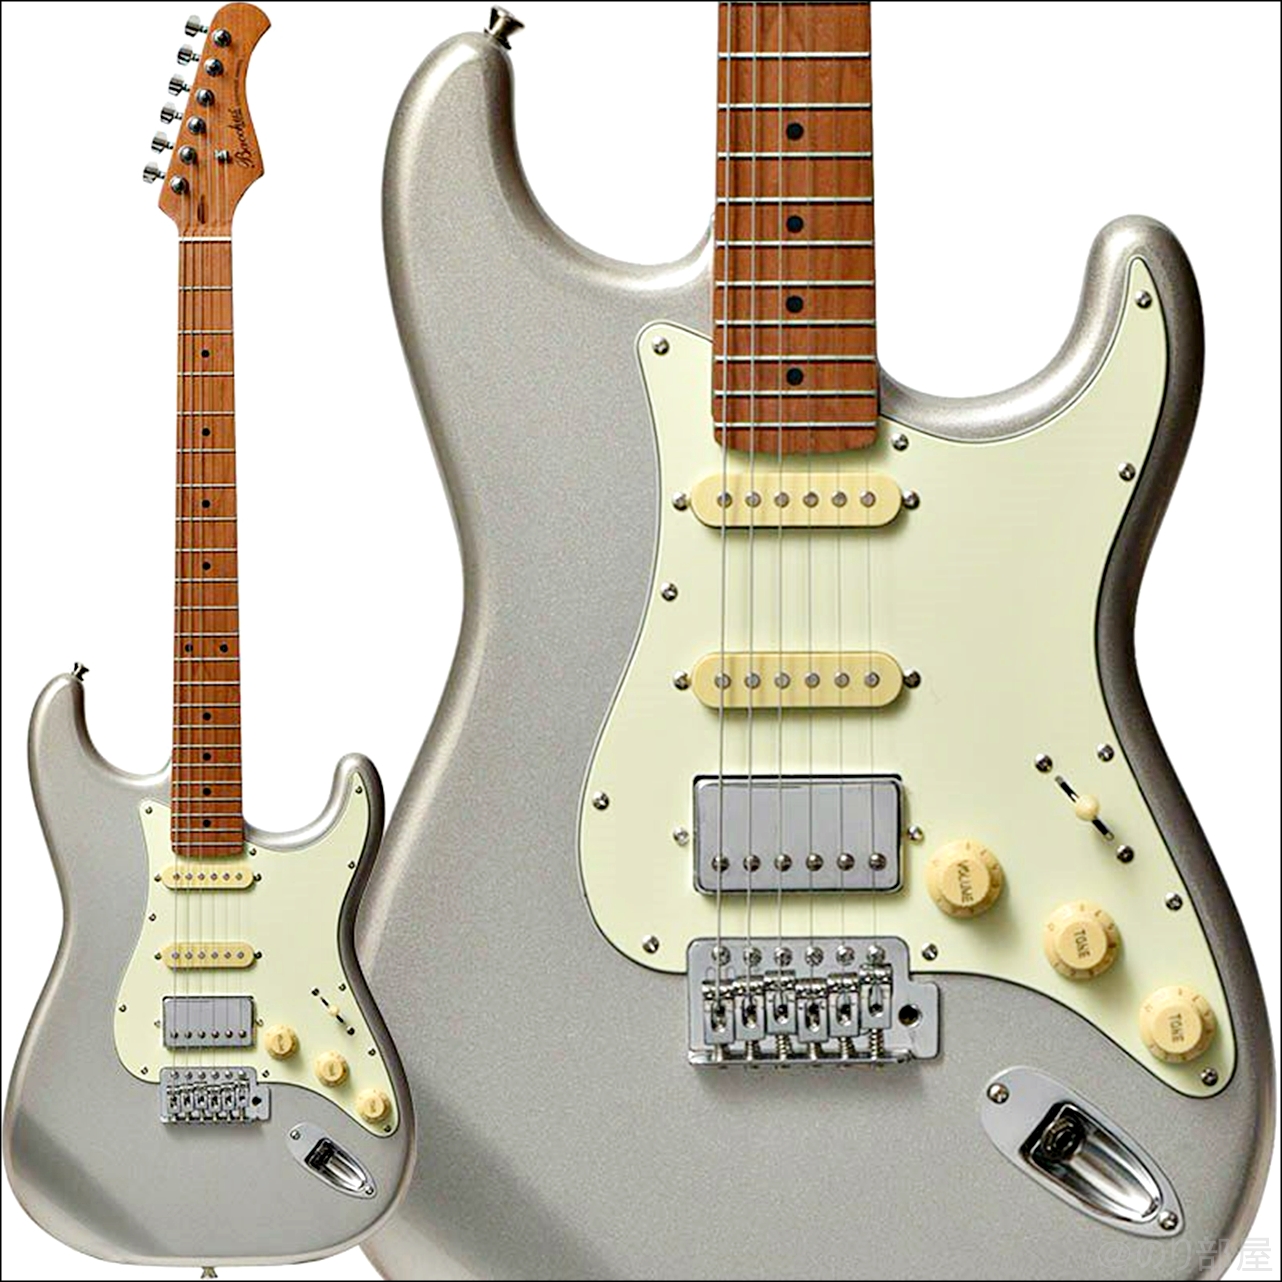 お金が無い人にオススメのギターは「BACCHUS(バッカス) BST-2-RSM/R」！【安くて初心者にもおすすめ】お金が無い人向けにオススメのギター&用品！初心者にもオススメの安くお金がかからないアイテムを紹介！